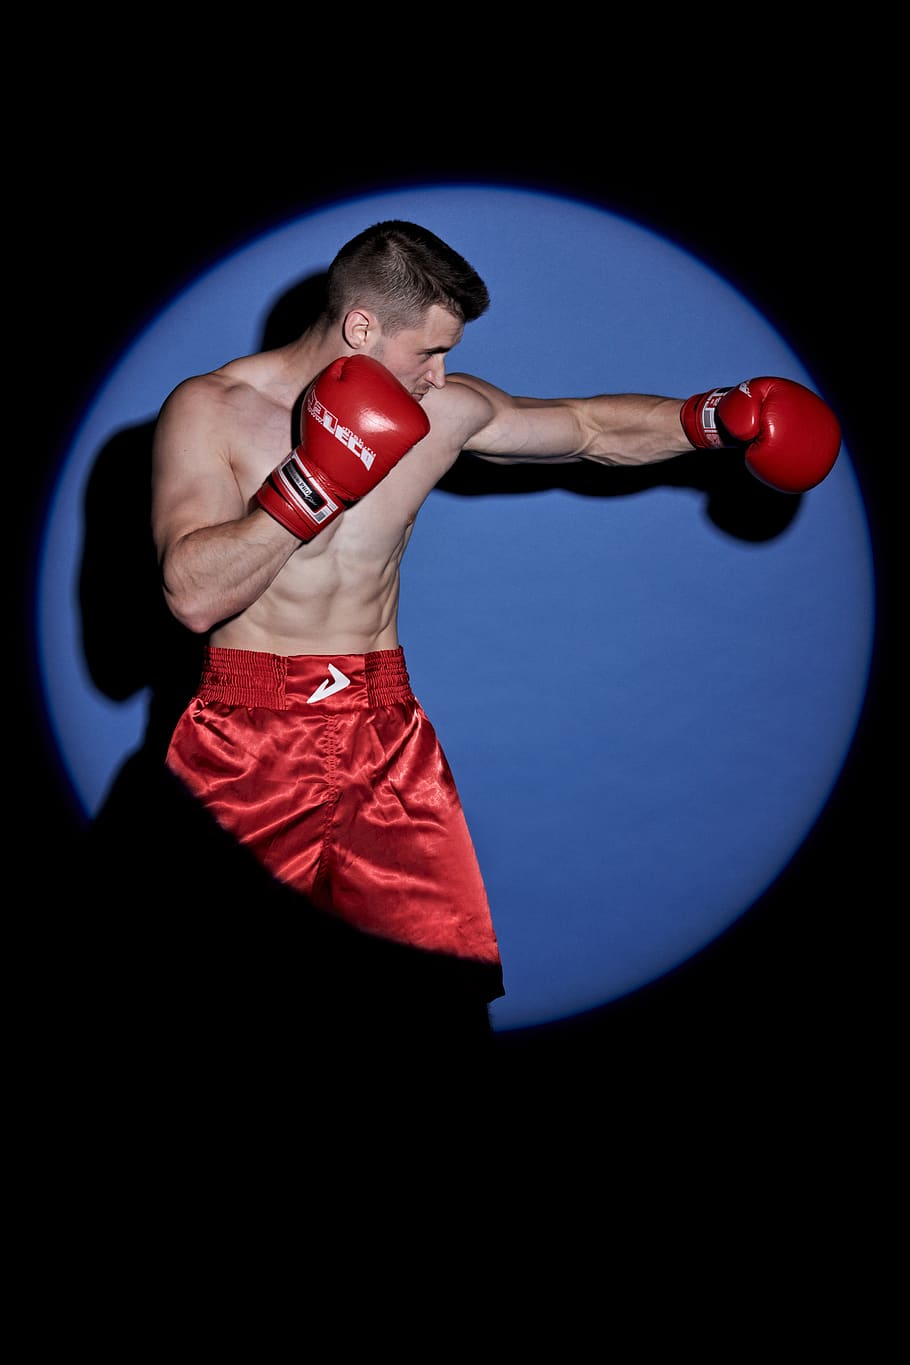 boxe, modelo, esporte, corpo, esportes, sessão de fotos, kickboxing, boxer, atleta, tiro de estúdio